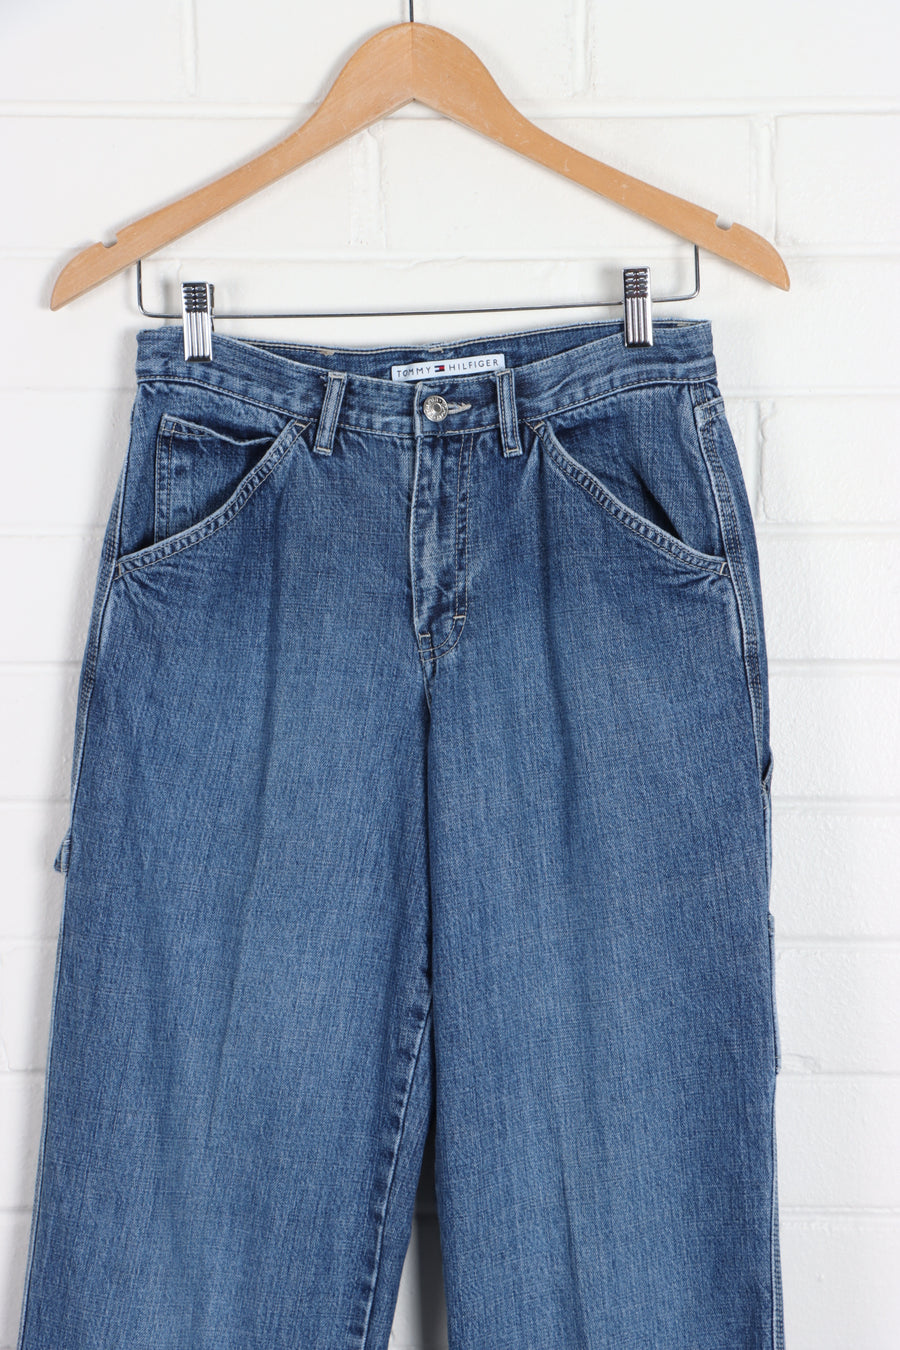 TOMMY HILFIGER Carpenter Sand Blasted Denim Mid Rise Jeans (Women's 6-8) - Vintage Sole Melbourne